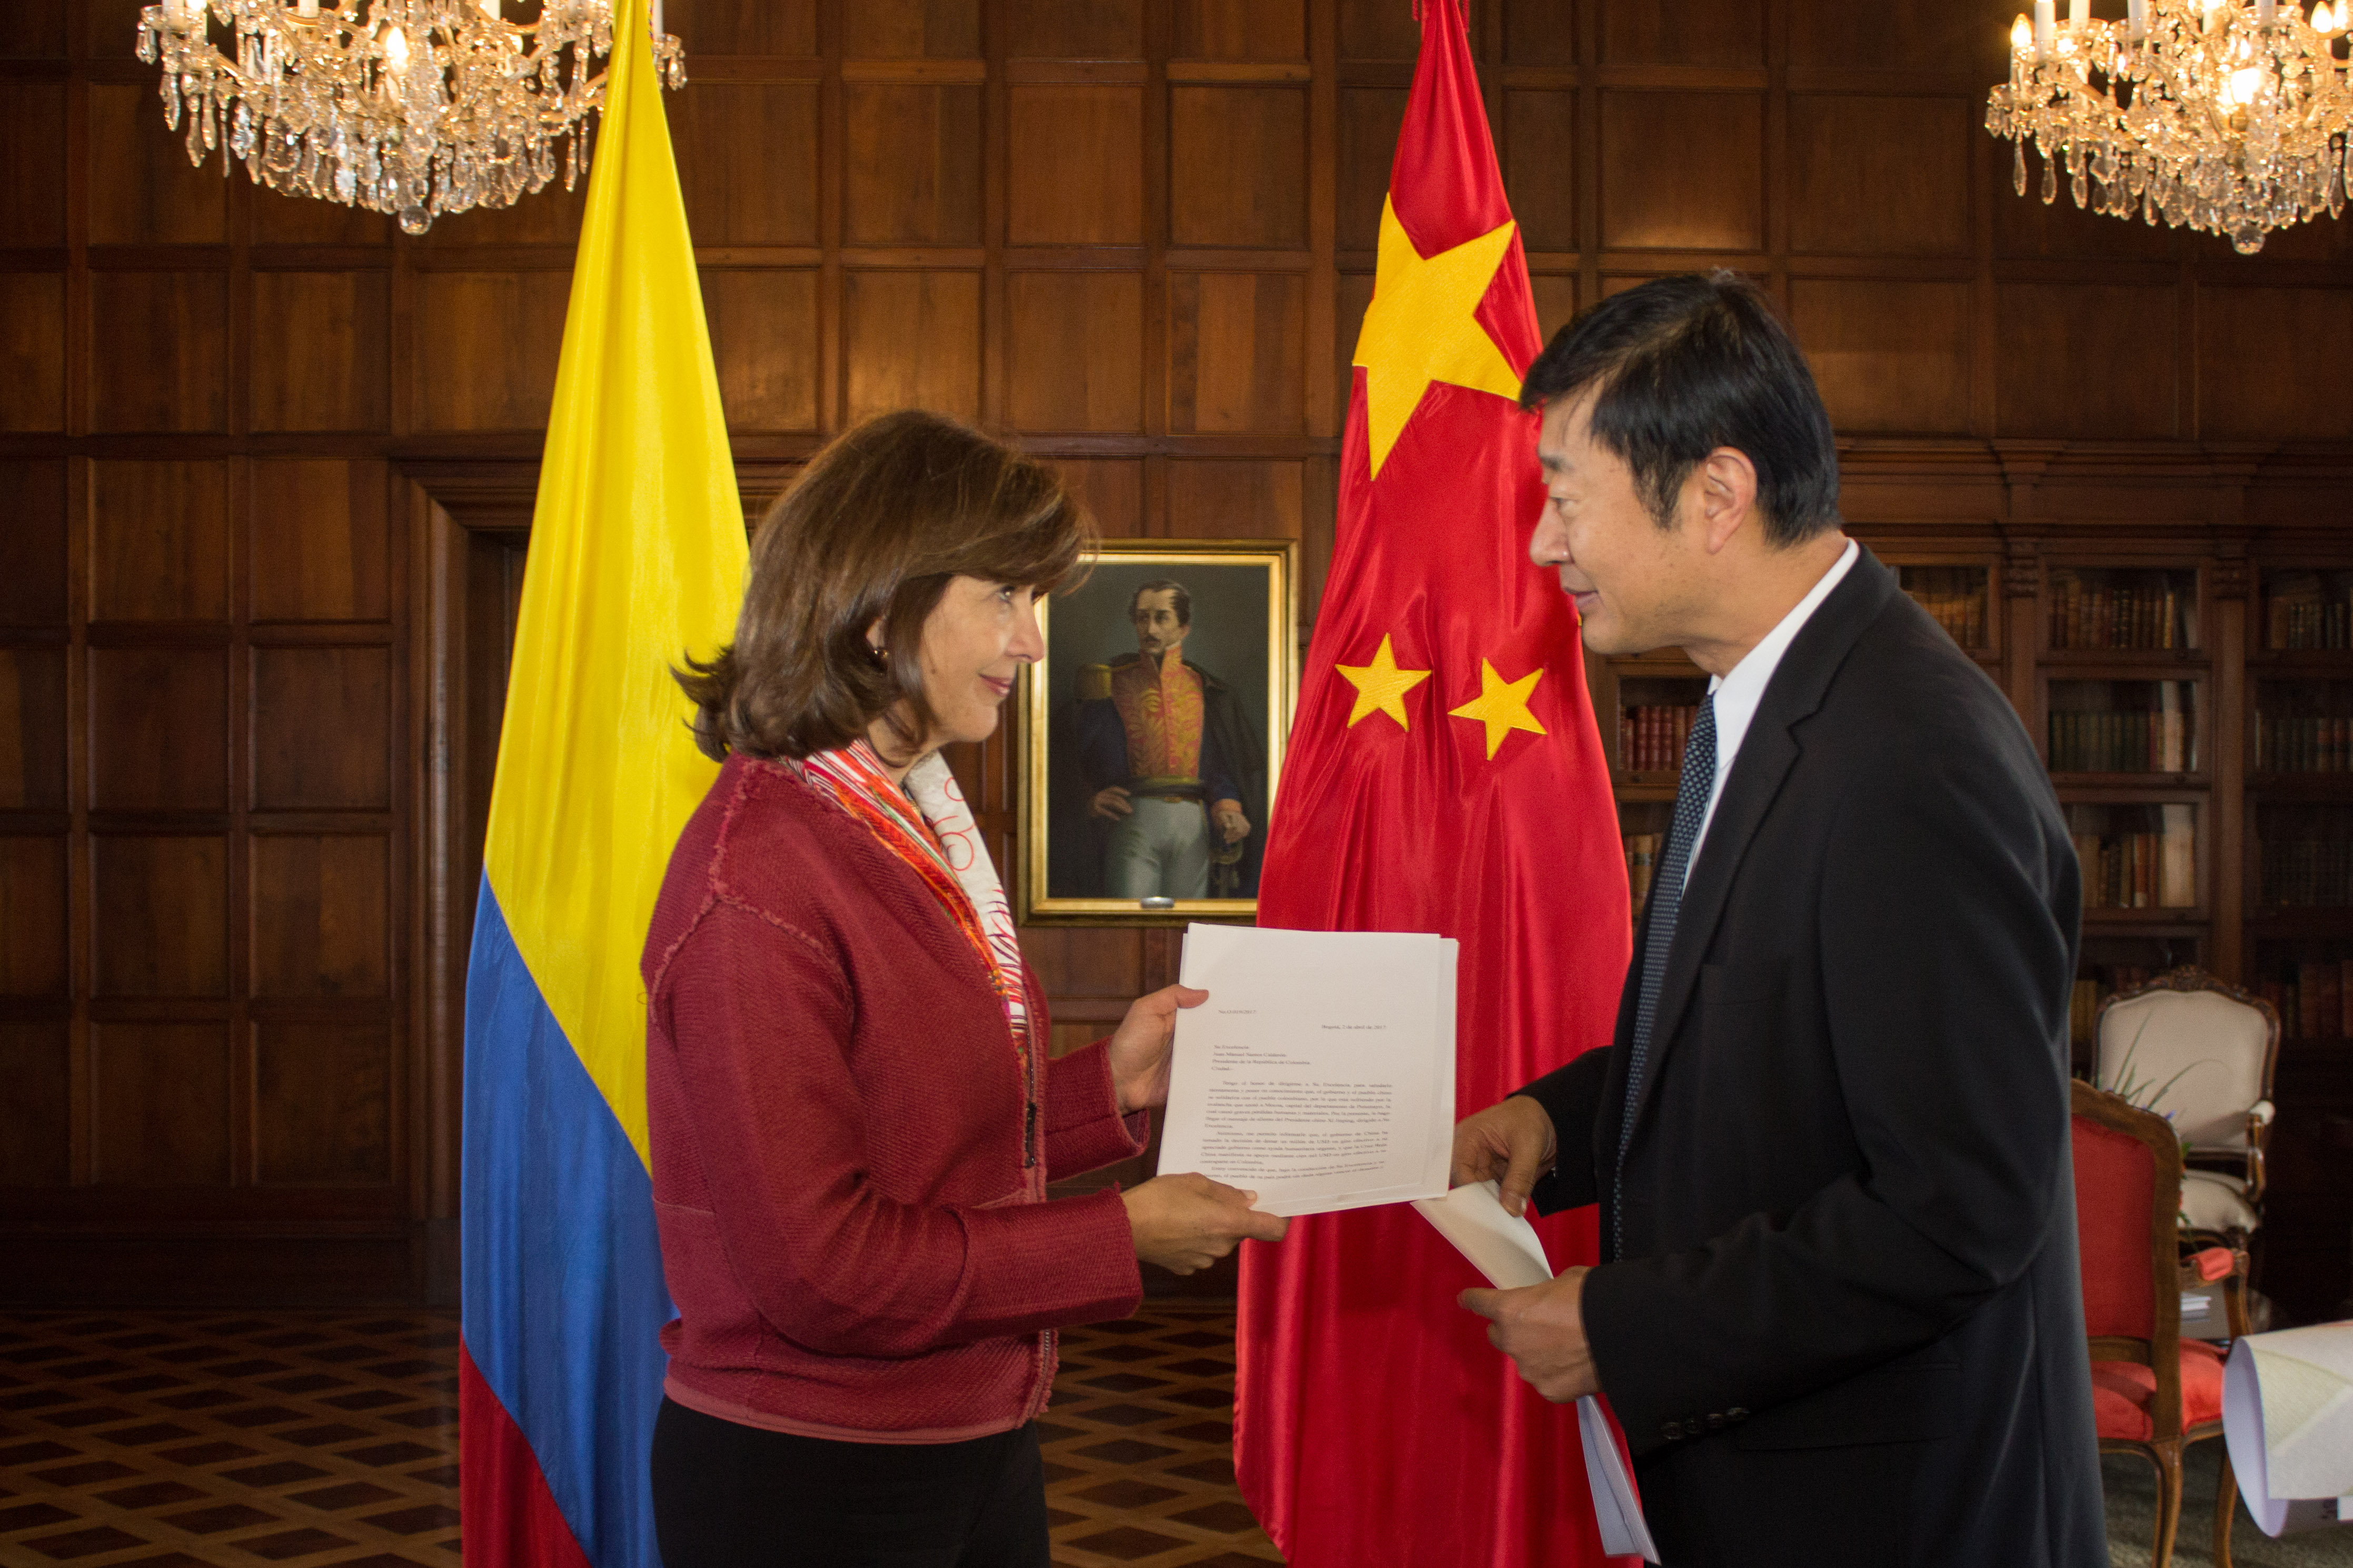 Gobierno de China dona 1 millón de dólares a Colombia para asistencia humanitaria en Mocoa